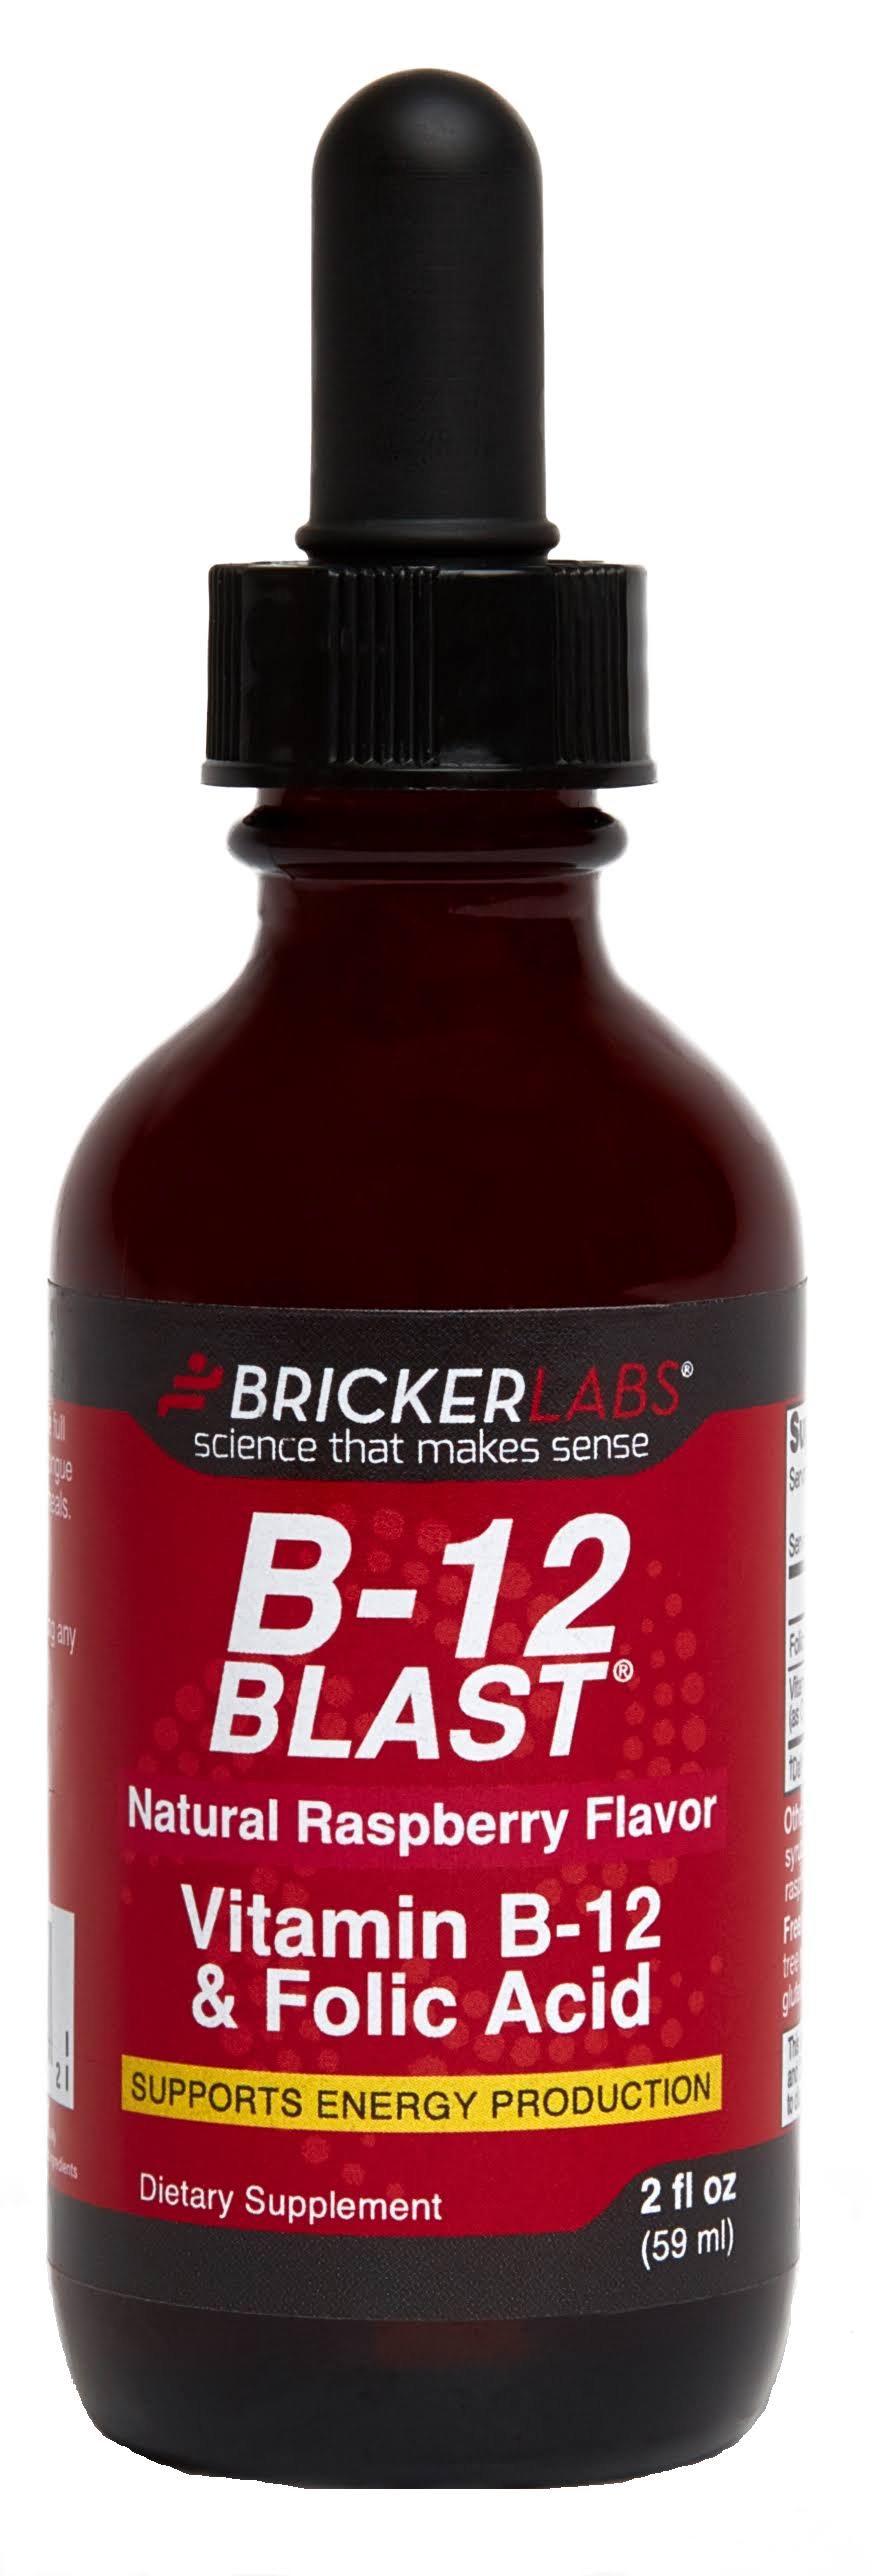 Bricker Labs B12 Blast Vitamin B12 and Folic Acid Supplement - Raspberry, 2oz